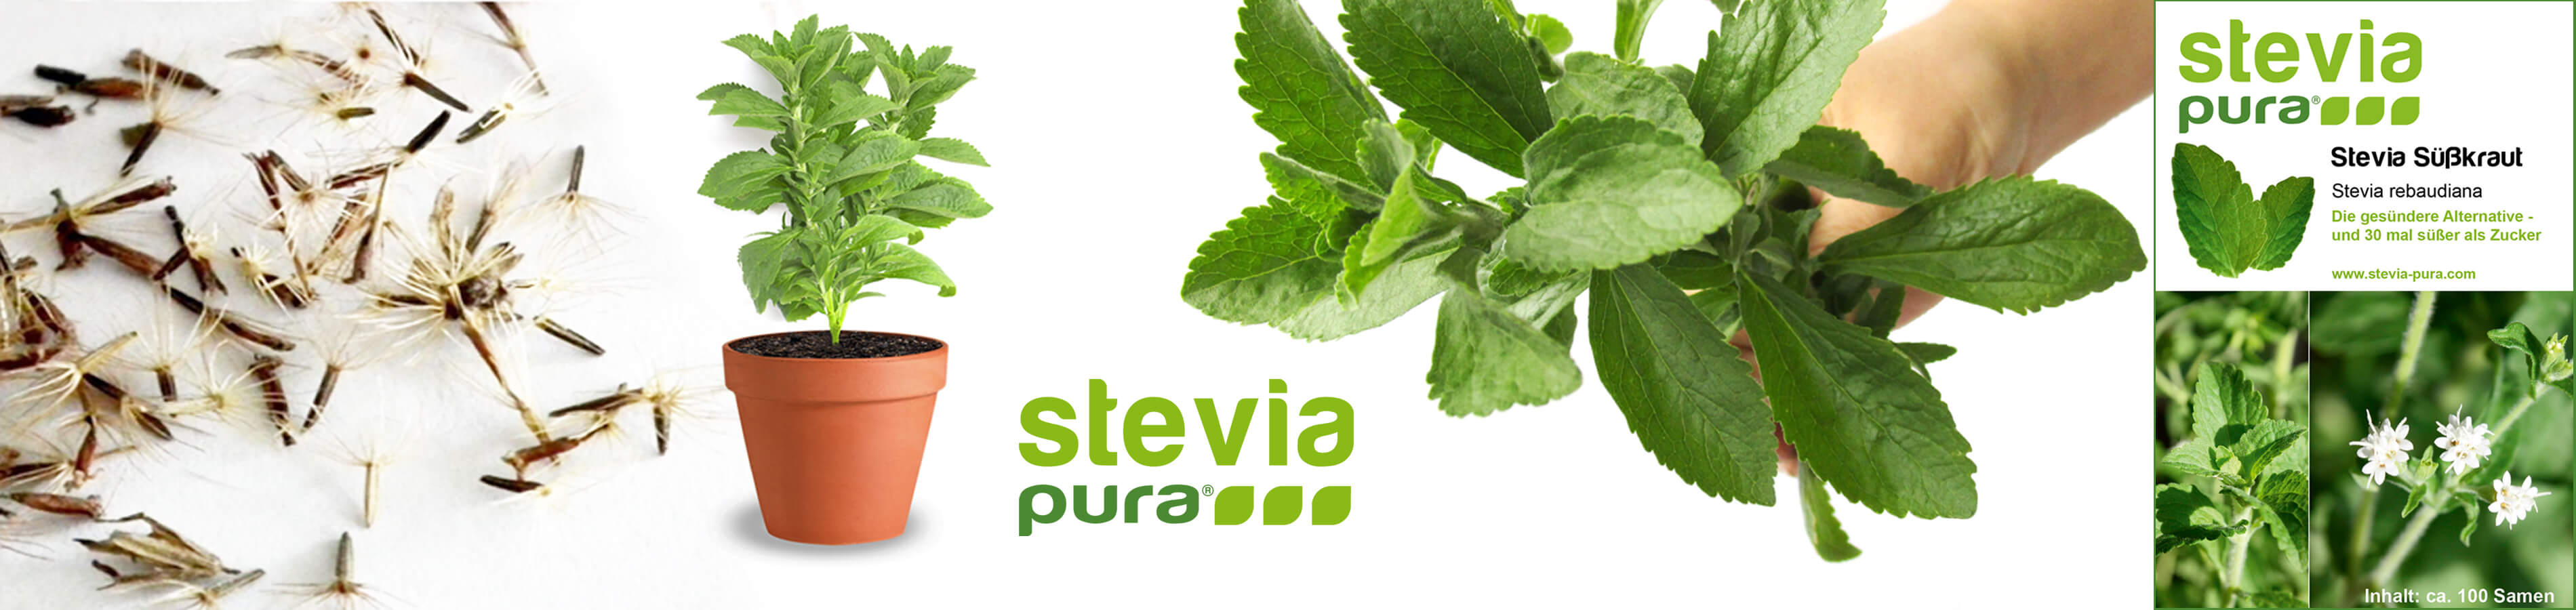 Graines de stévia Semences de stévia herbe douce Stevia...